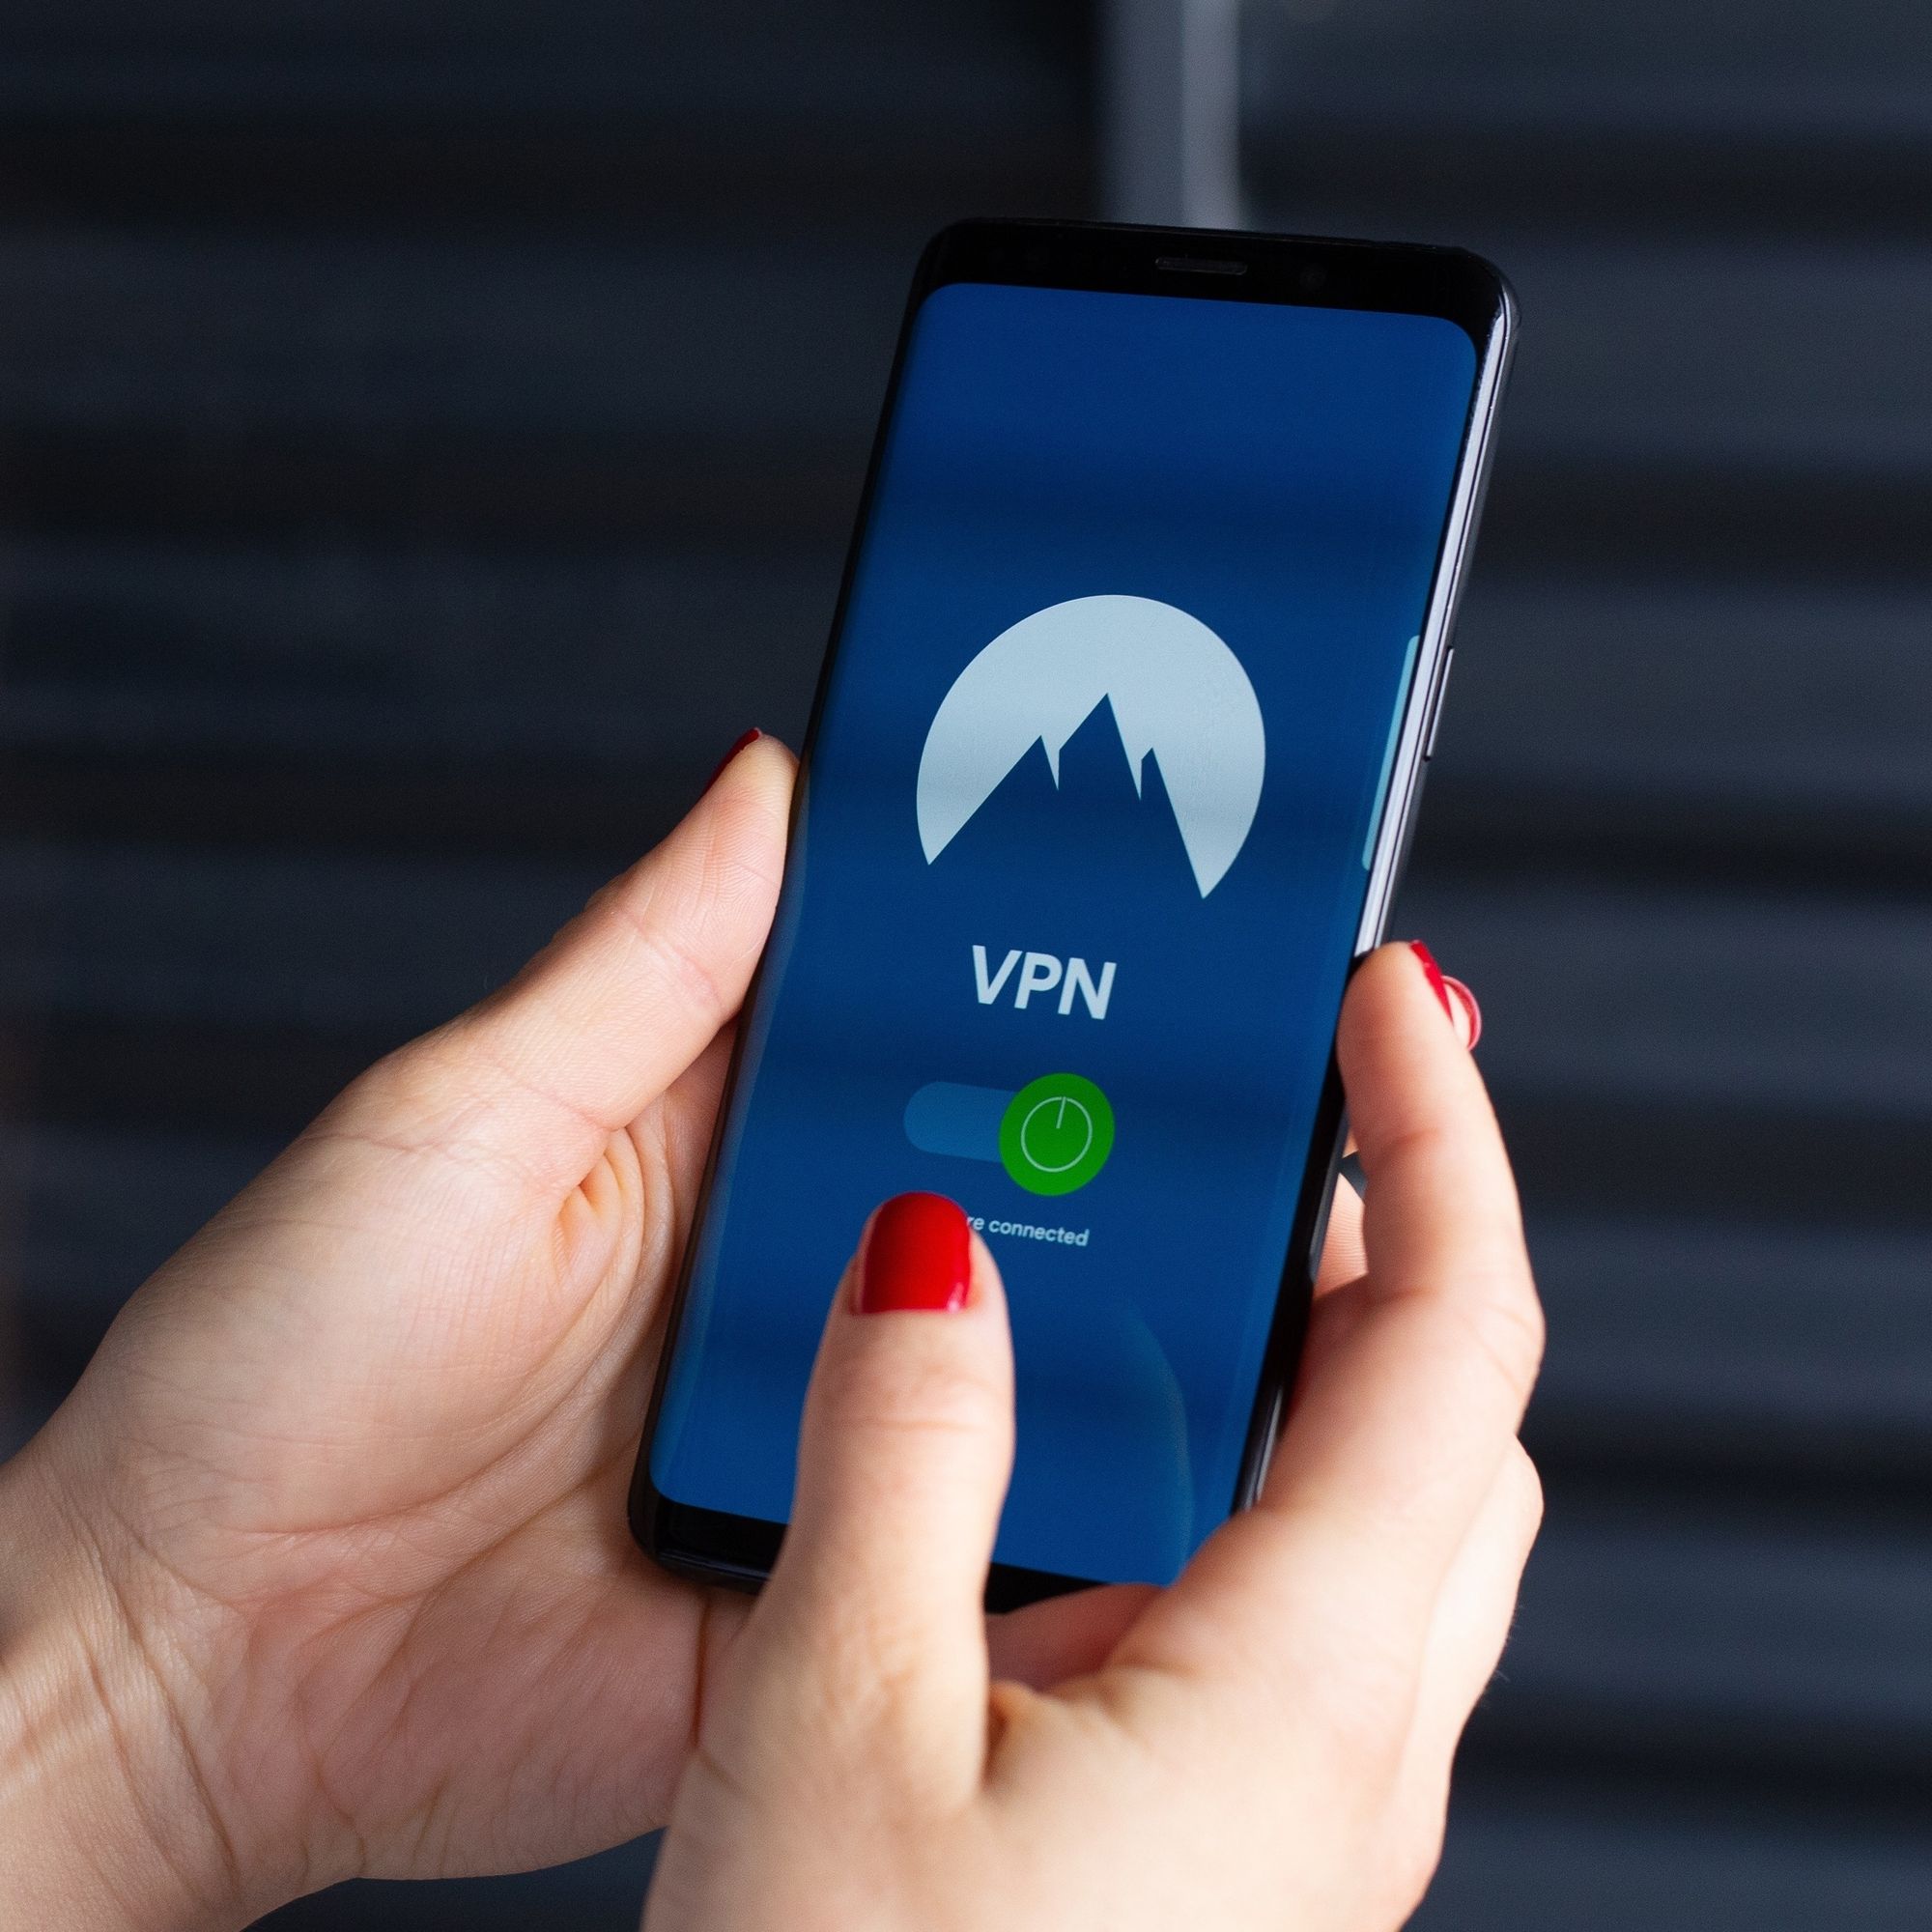 Bruken av VPN skal ha eksplodert i Russland de siste ukene - Digi.no